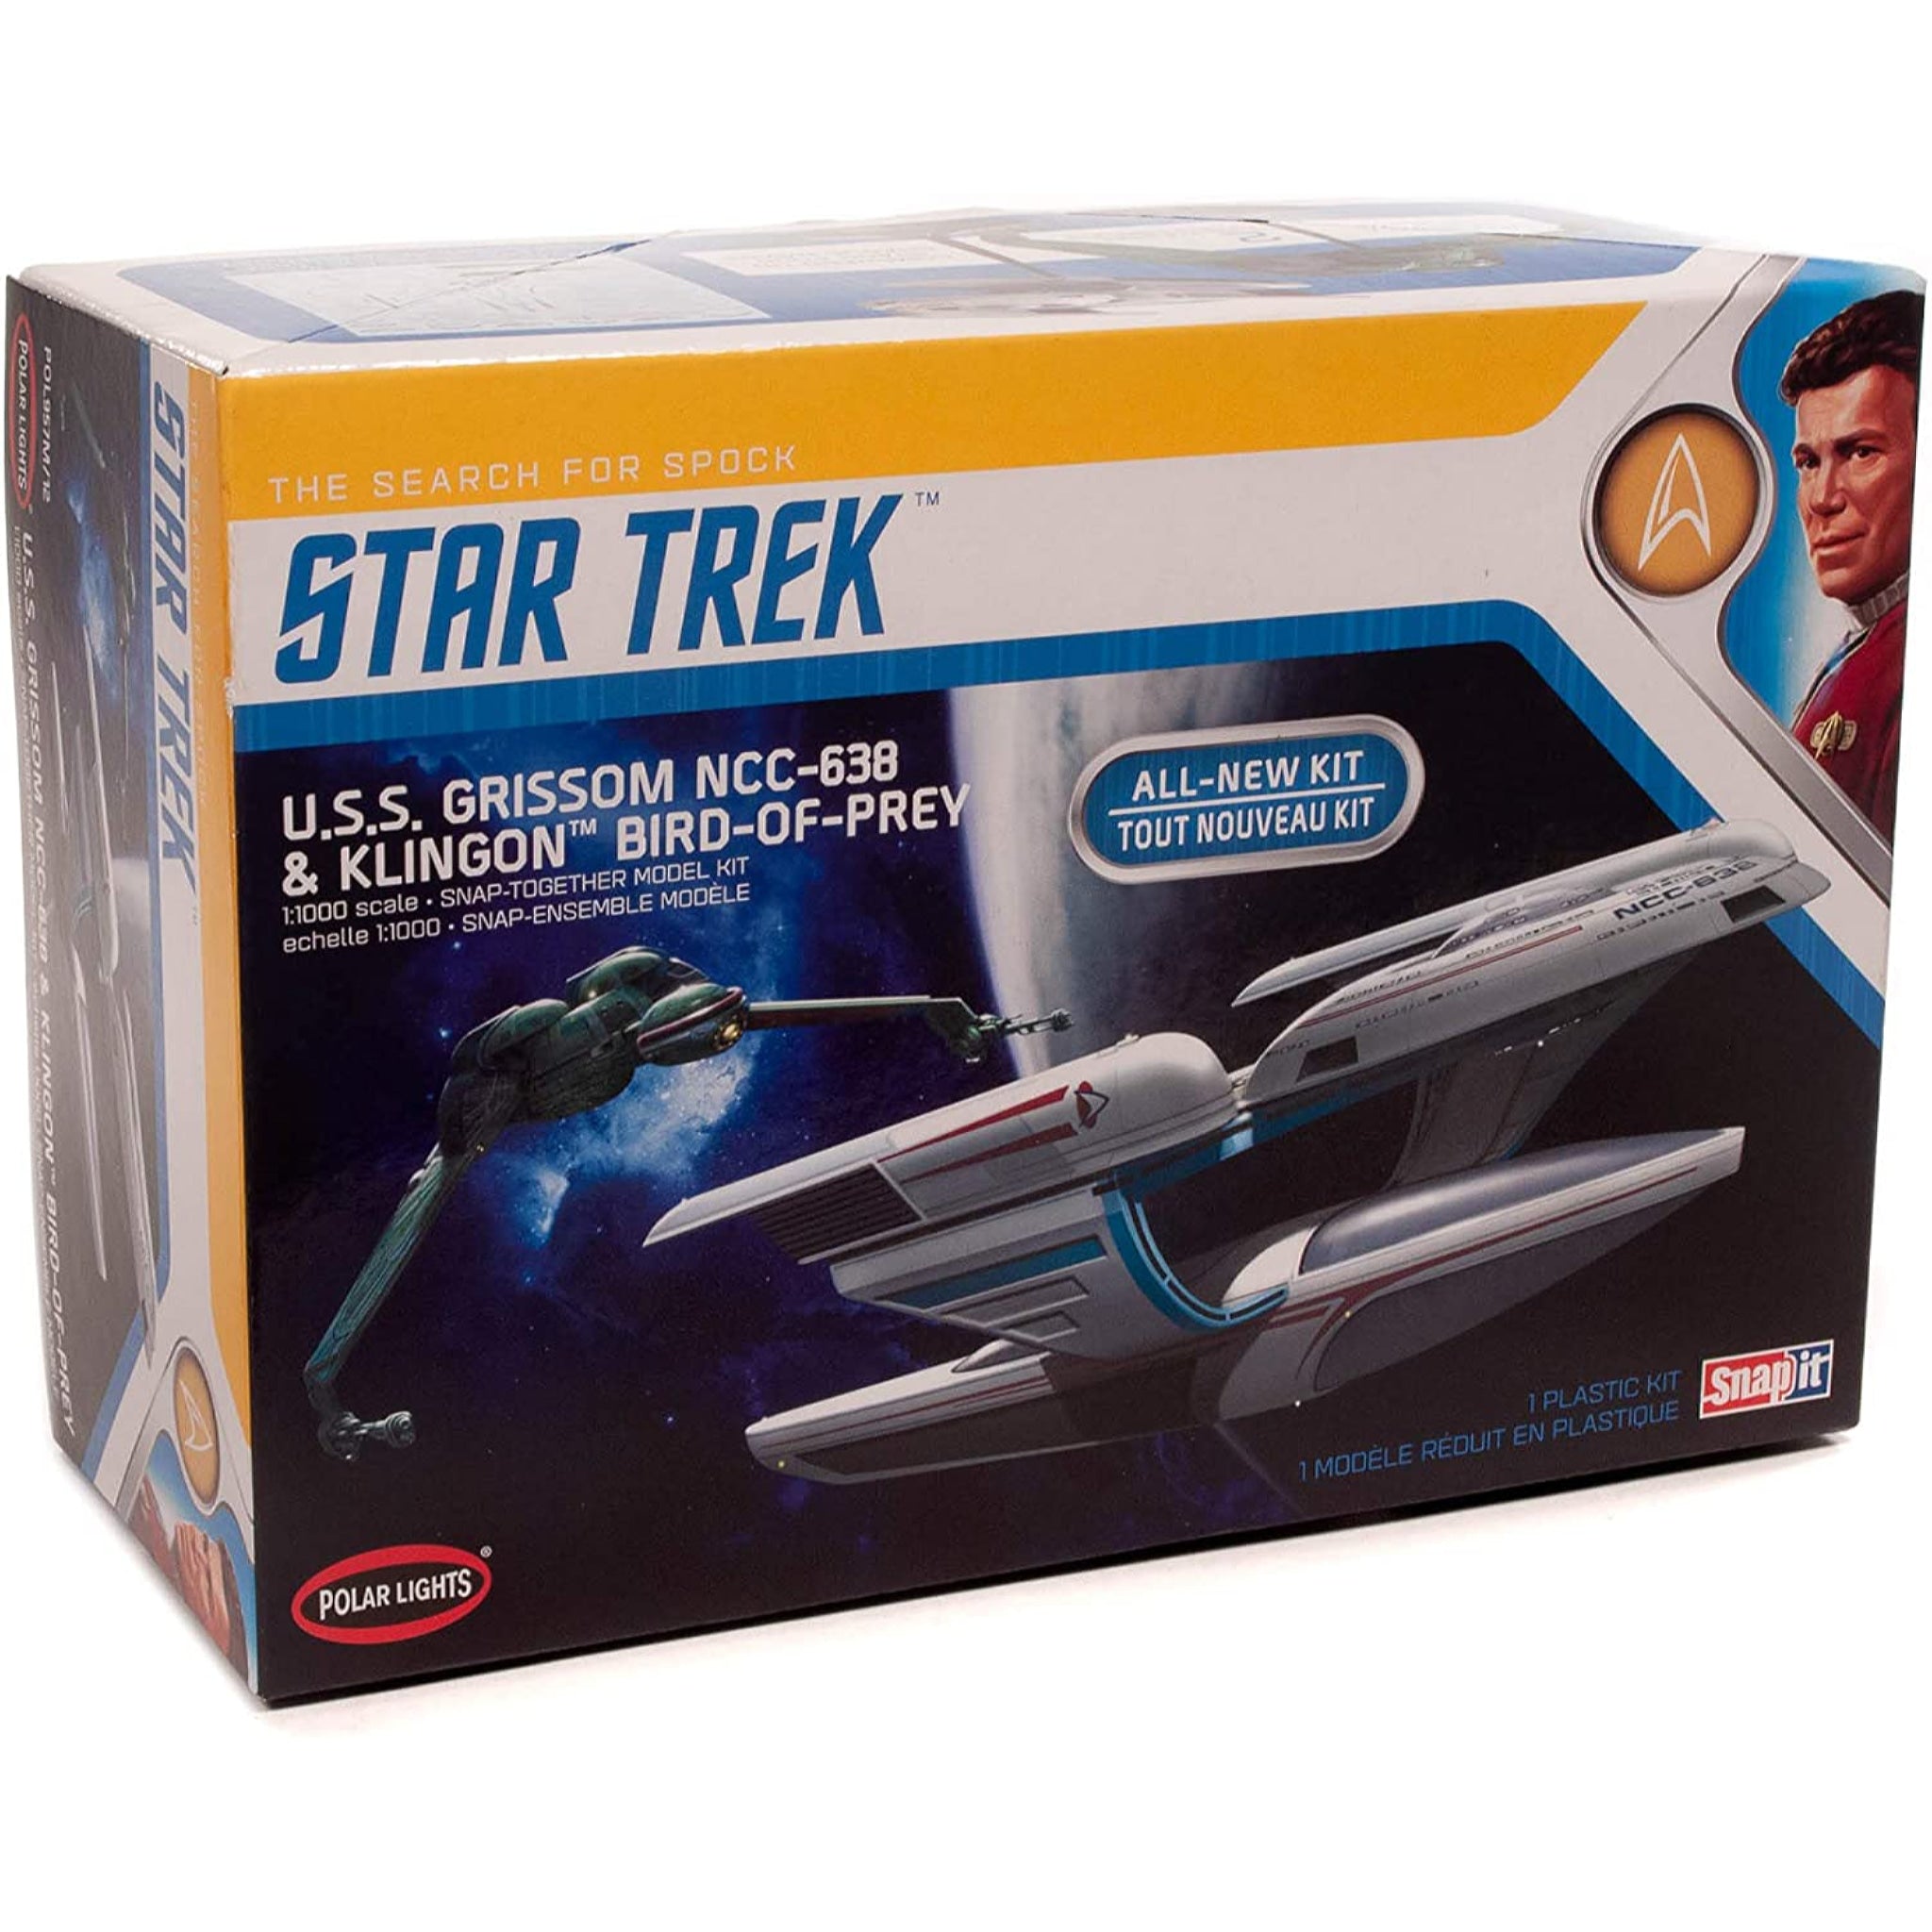 Polar Lights 1:1000 Star Trek The Search for Spock U.S.S. Grissom NCC-638 & Klingon Bird of Prey 2-Pack Model Kit POL957